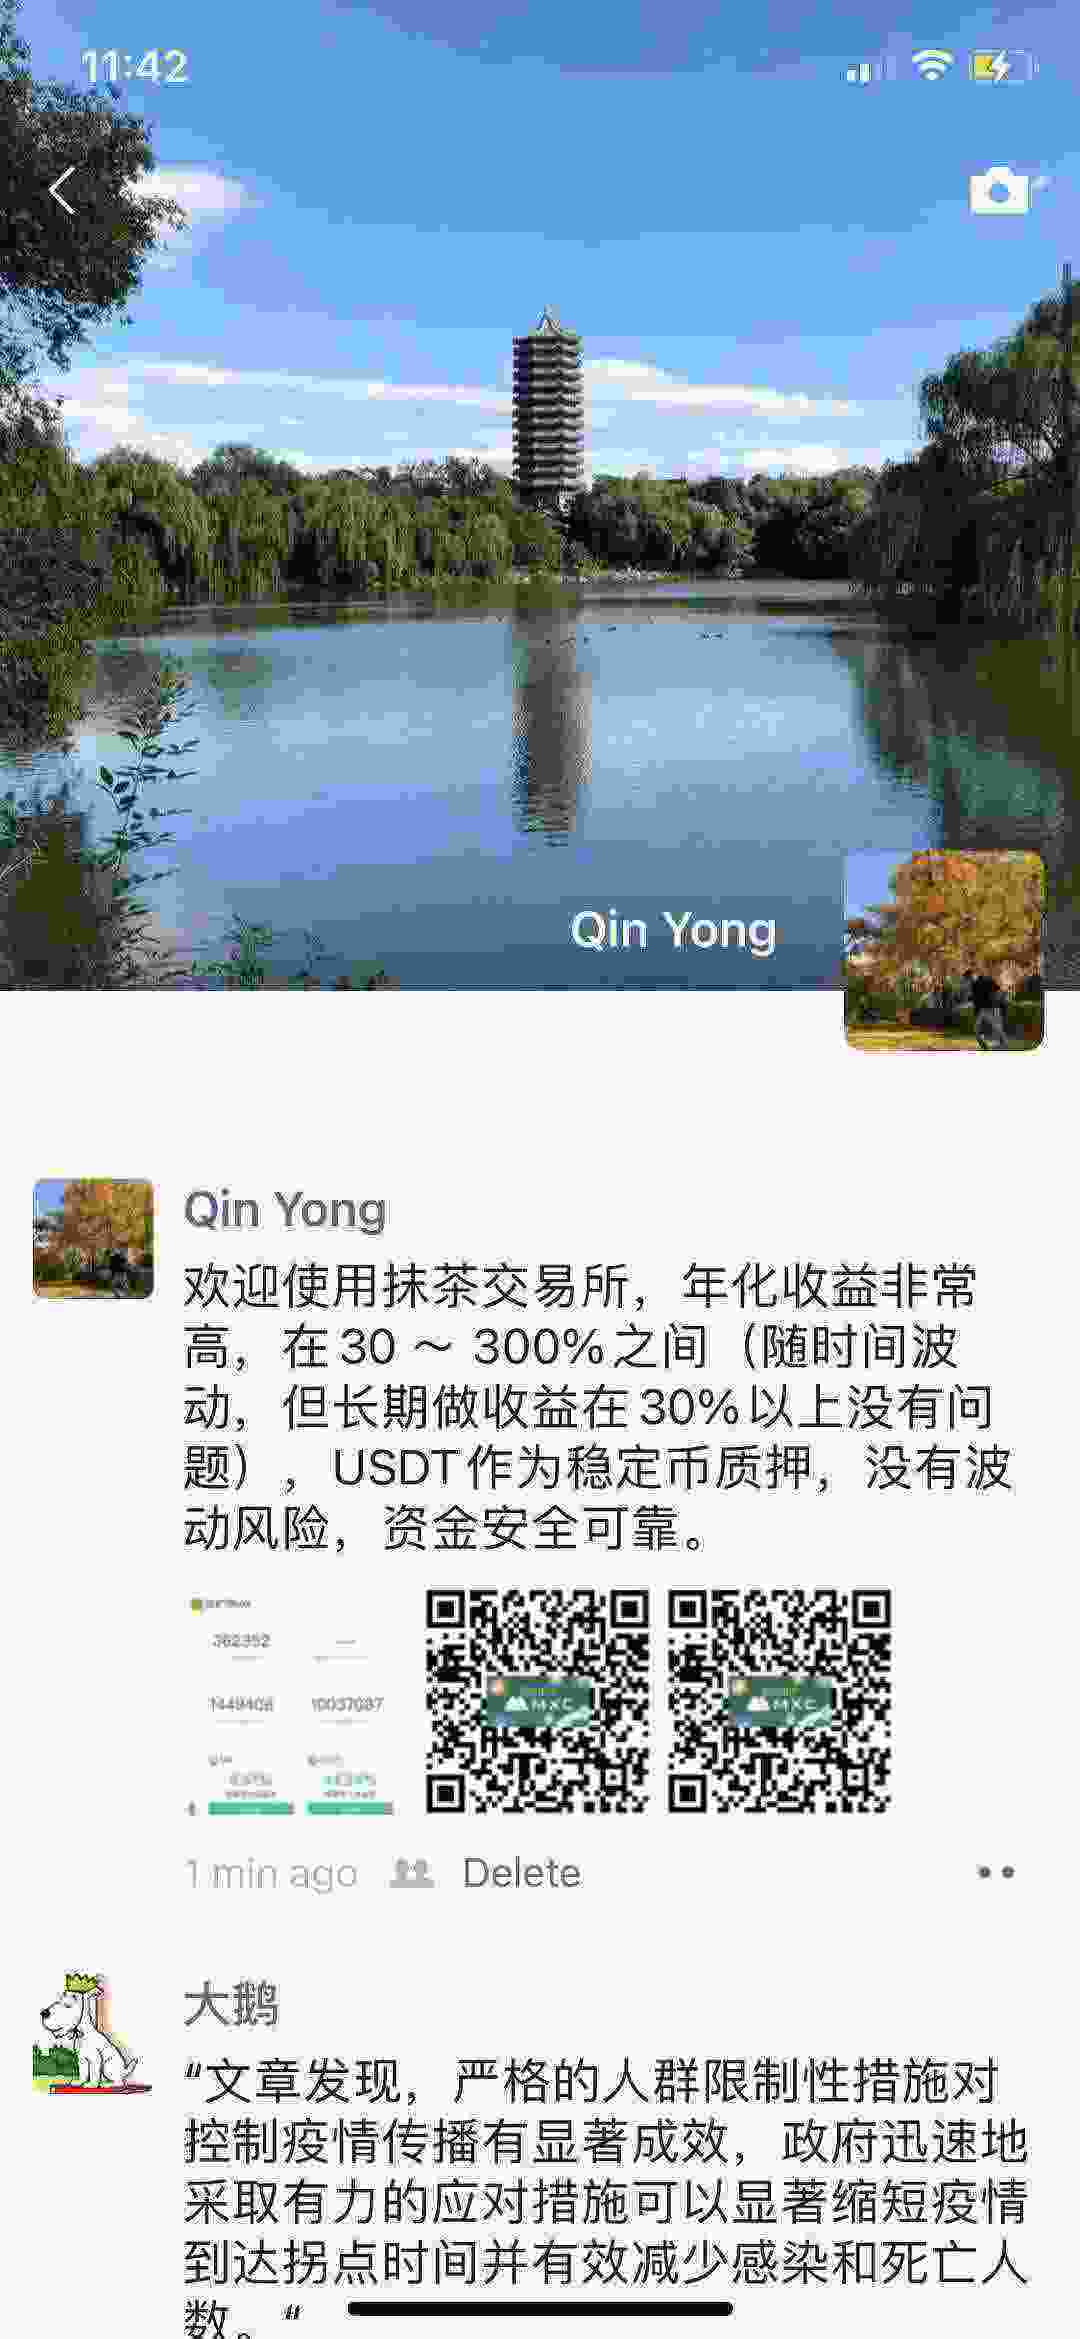 WeChat Image_20210407234234.jpg